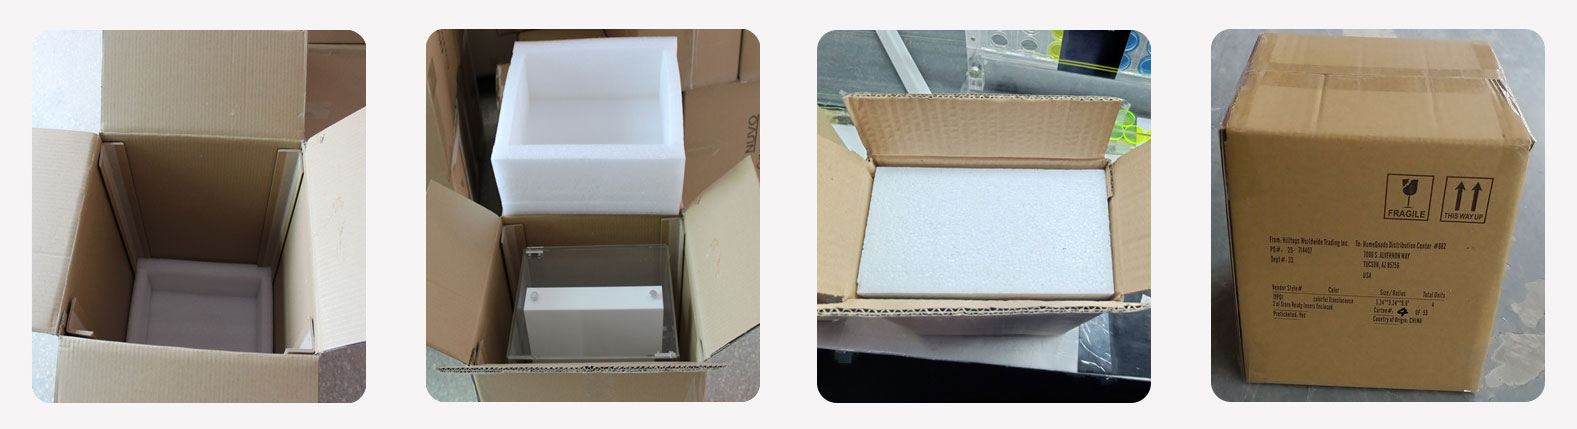 Verpackung aus Acryl-Aufbewahrungsboxen